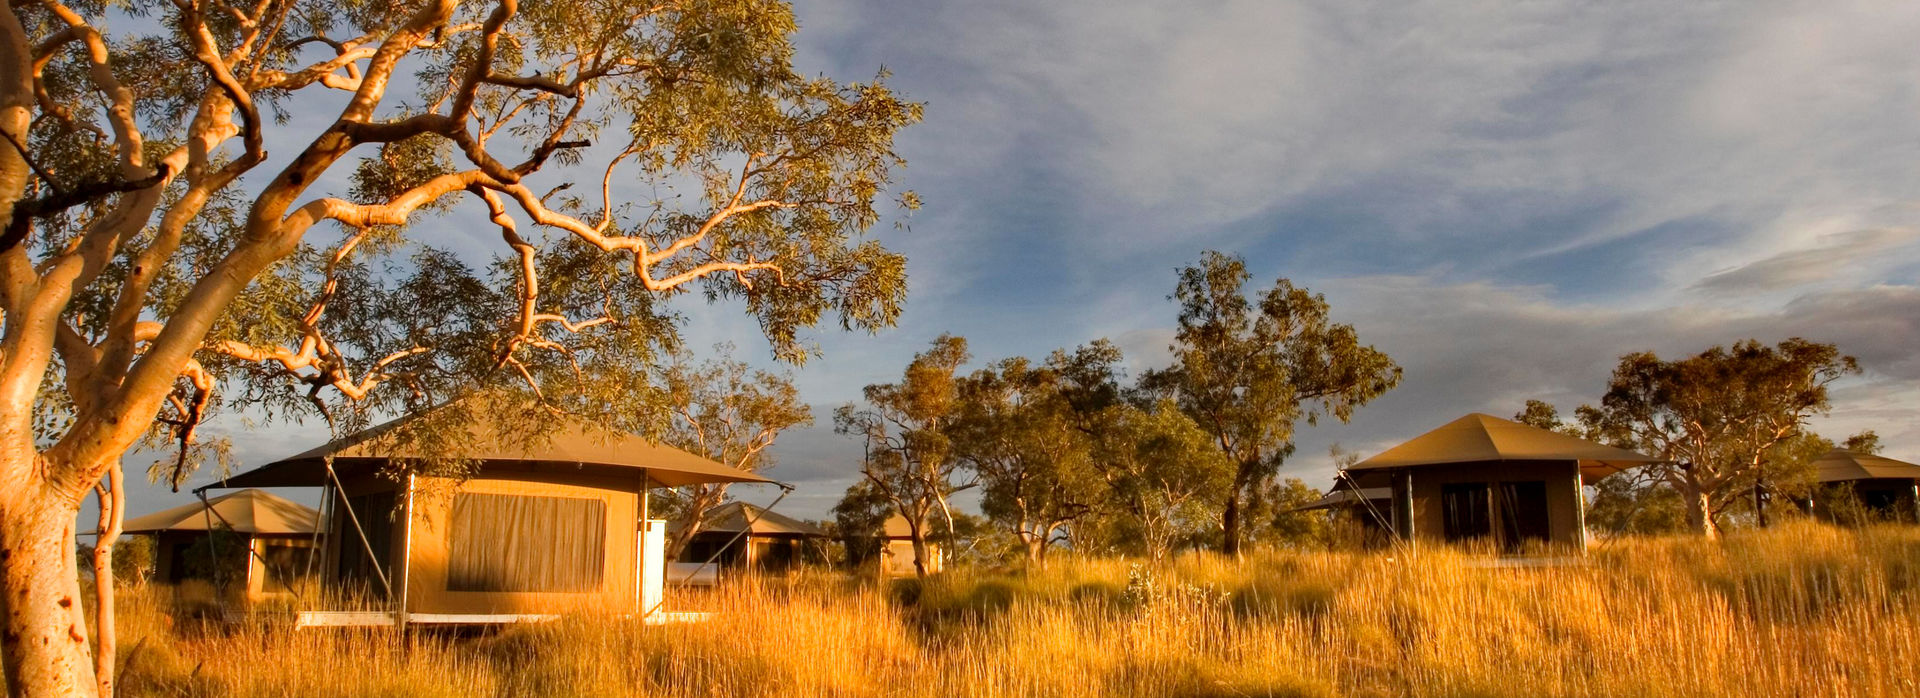 Karijini Eco Retreat in Western Australia